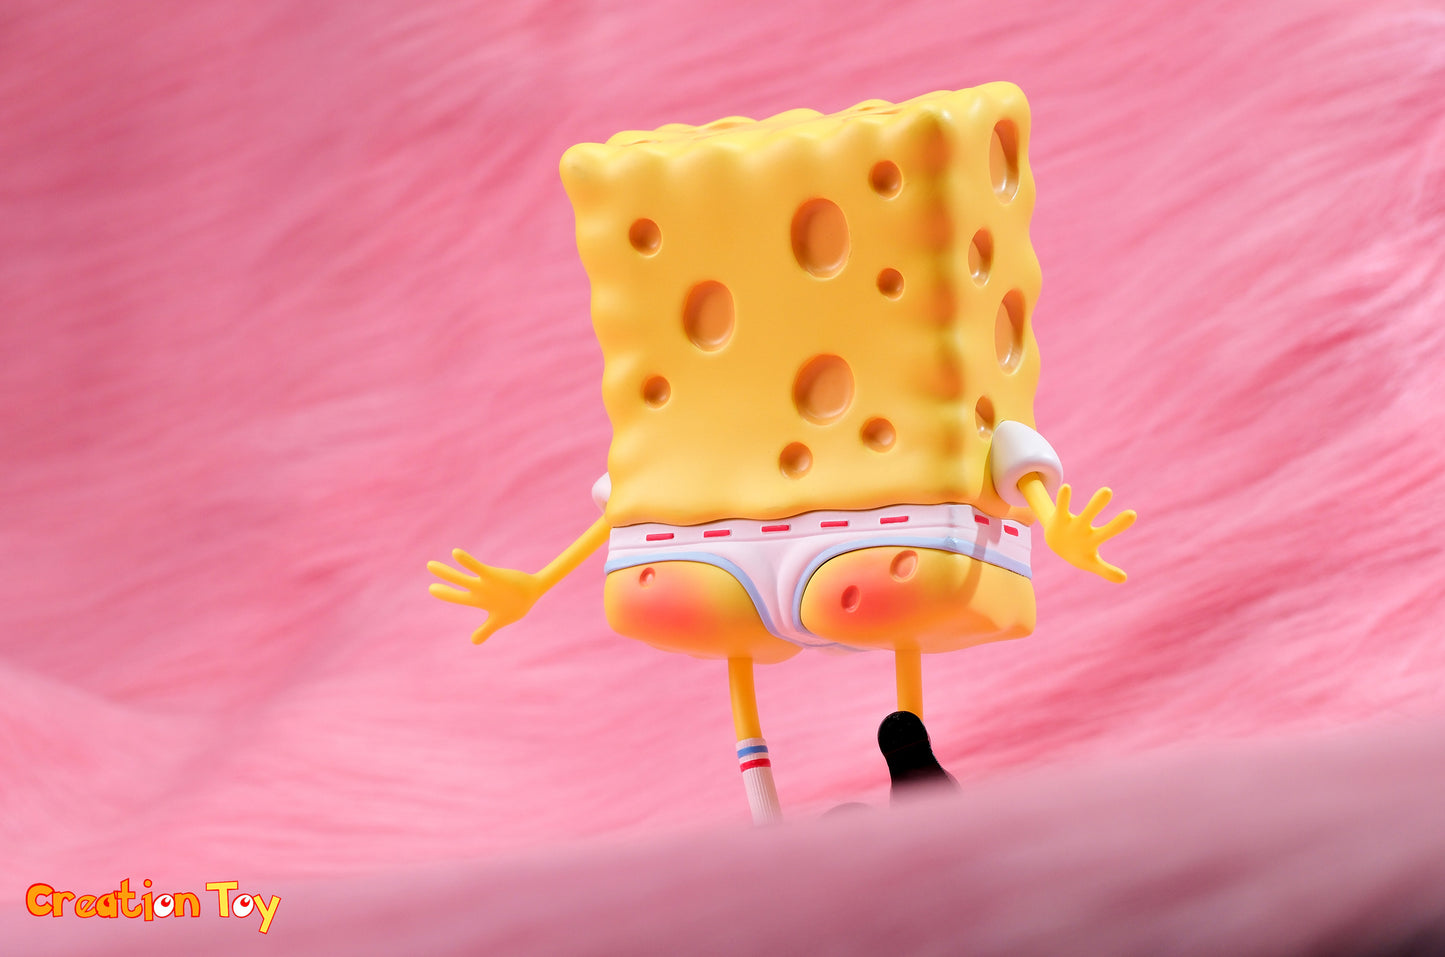 Creation Toy - Best Friend SpongeBob | 好朋友海绵宝宝